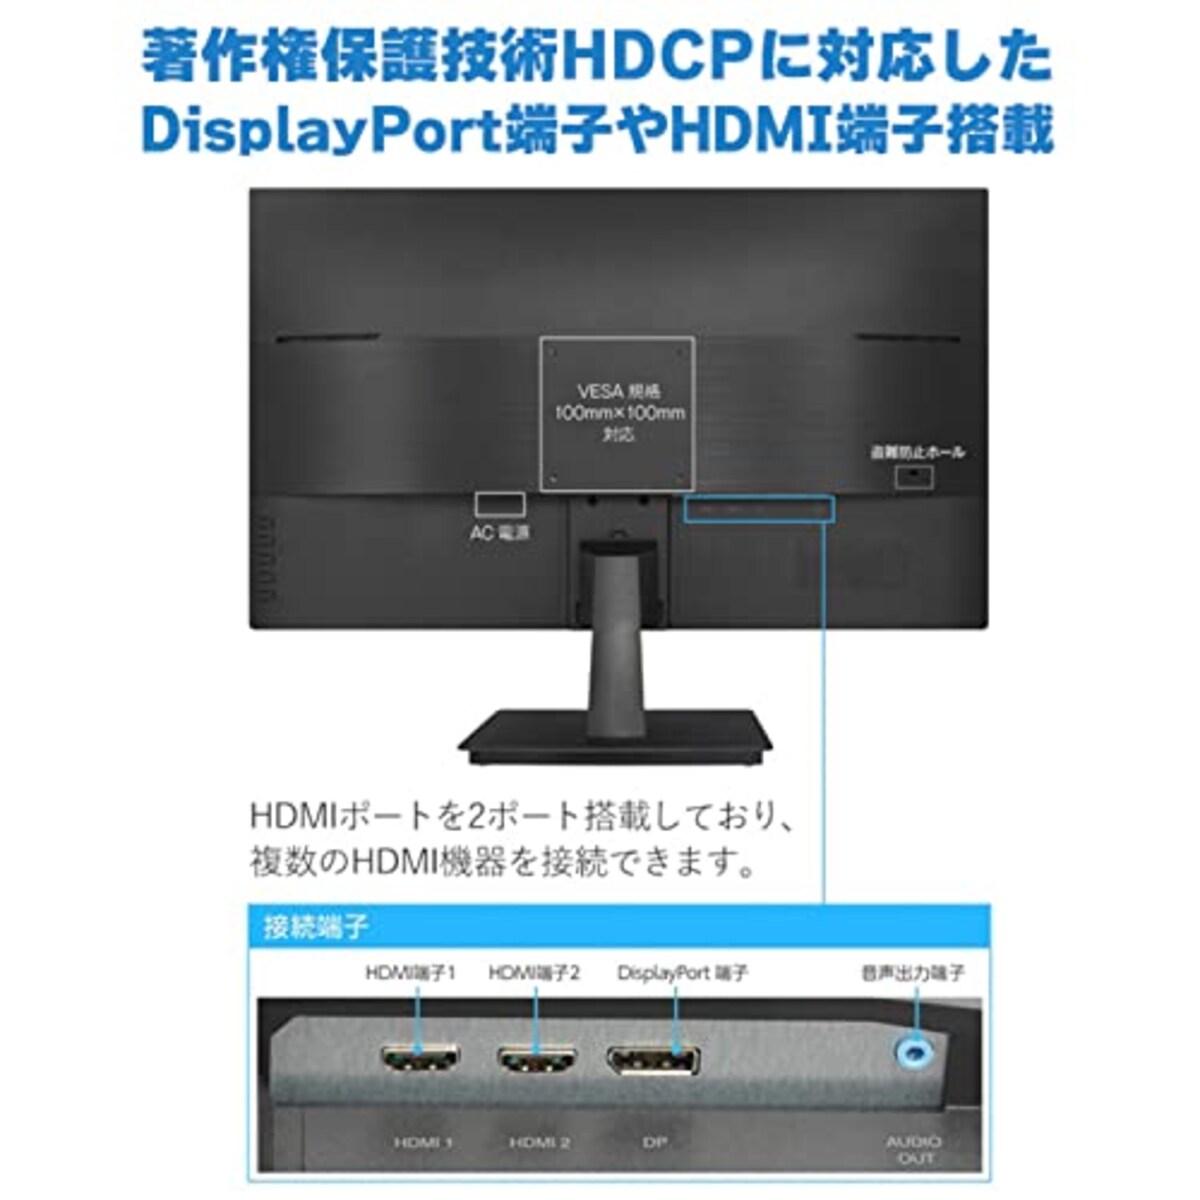  グリーンハウス 液晶ディスプレイ 27型 ワイド液晶 LED液晶 WQHD対応(2560×1440) 27インチ HDMI DisplayPort HDCP スピーカー ADSパネル 広視野角 低消費電力 ブルーライトカット 5 ブラック GH-ELCW27WB-BK画像5 